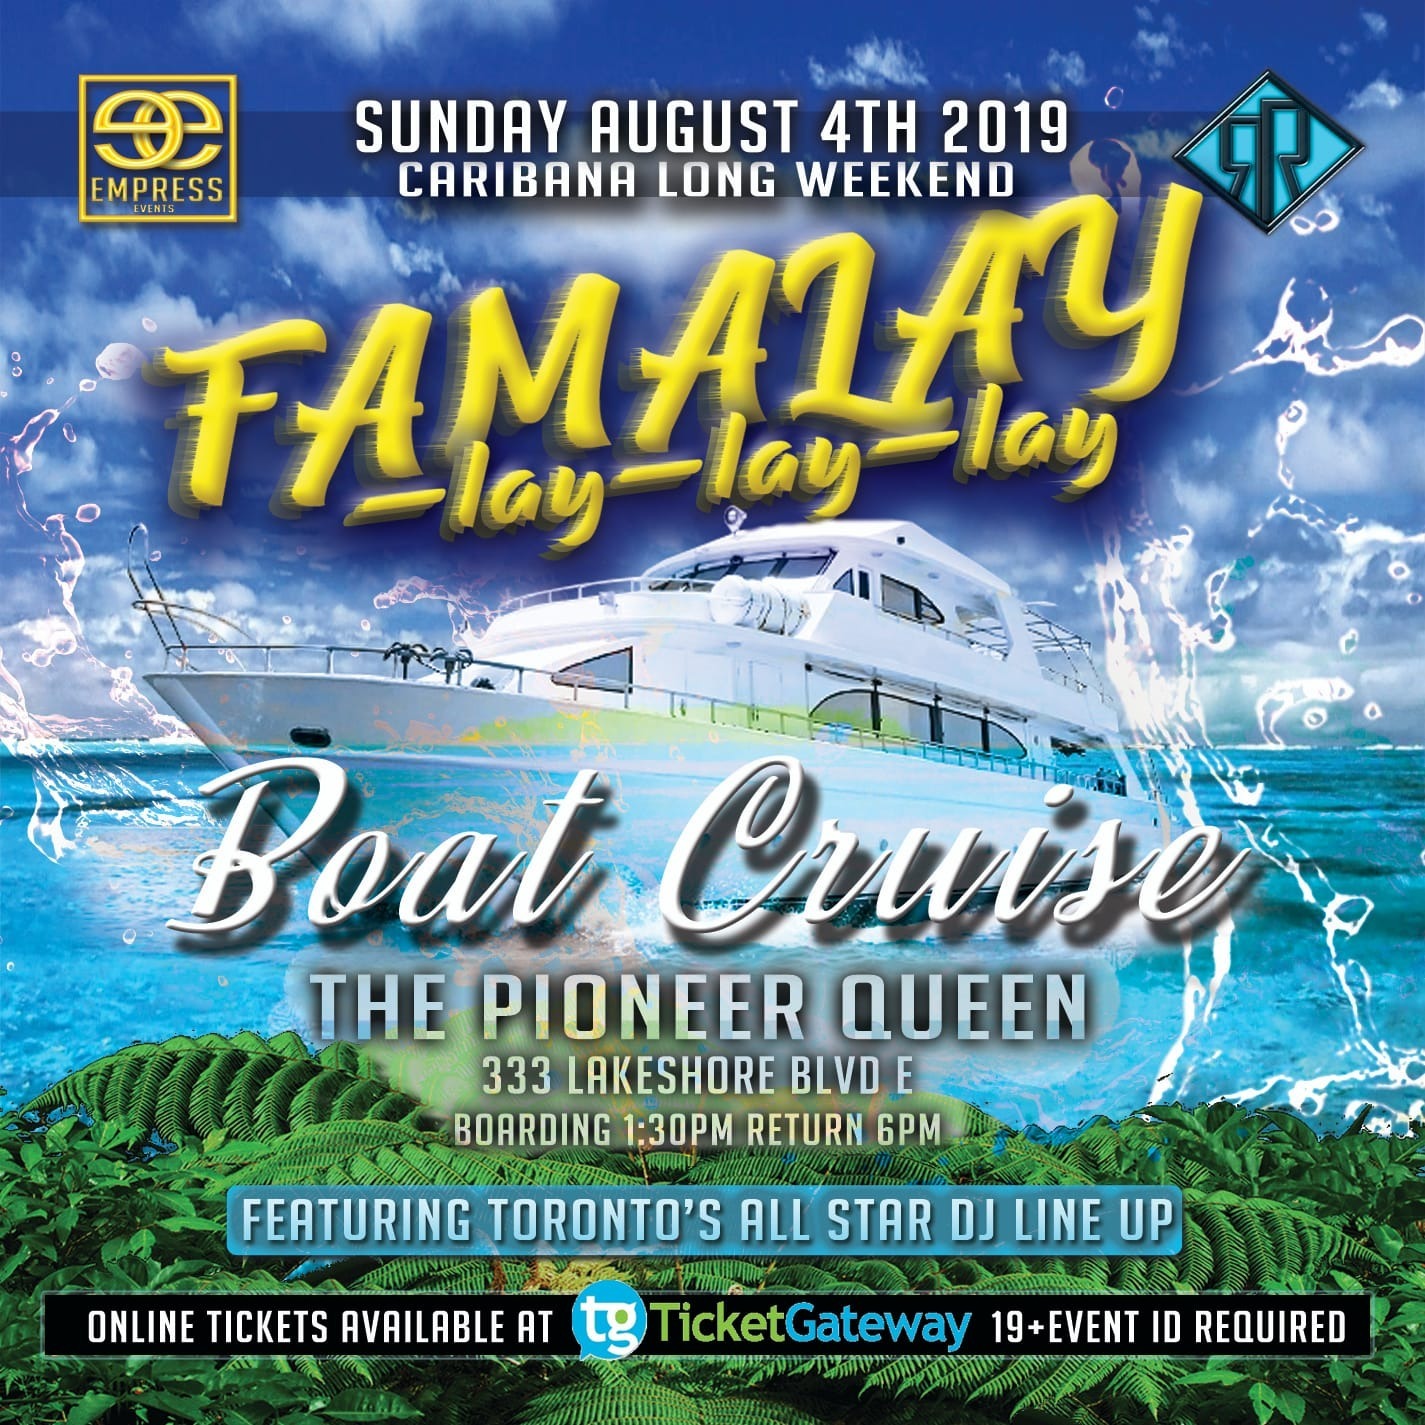 Famalay-lay-lay-lay Caribana Boat Cruise 